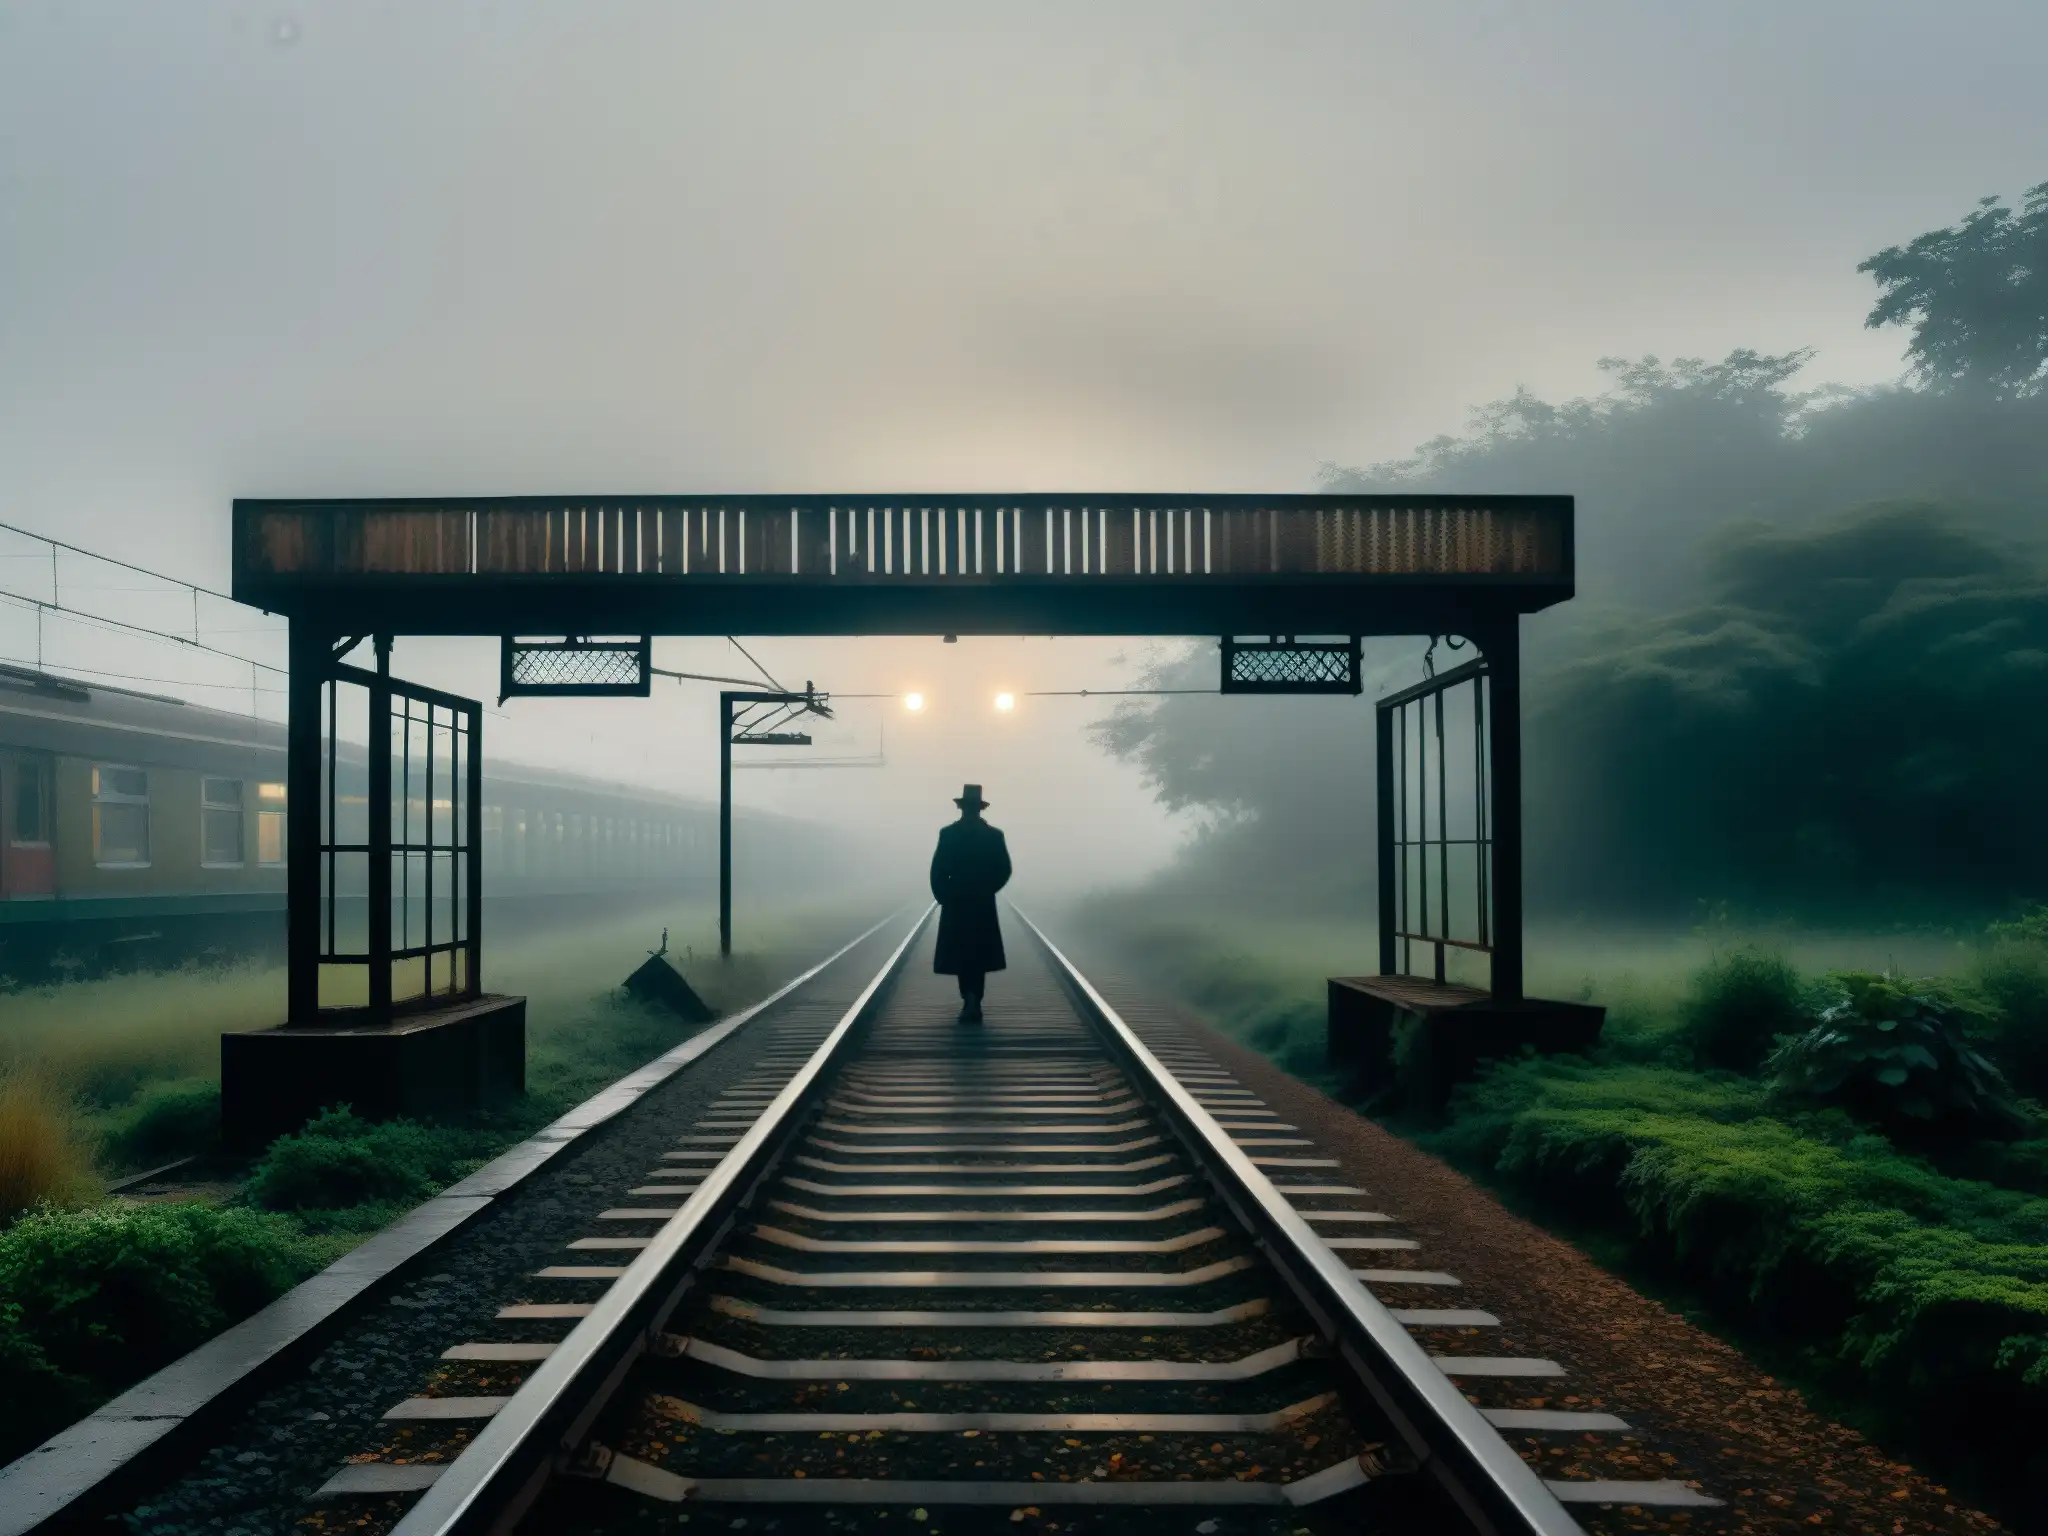 Un niño fantasma se vislumbra en la estación de ferrocarril Begunkodor, entre la neblina y la vegetación abandonada